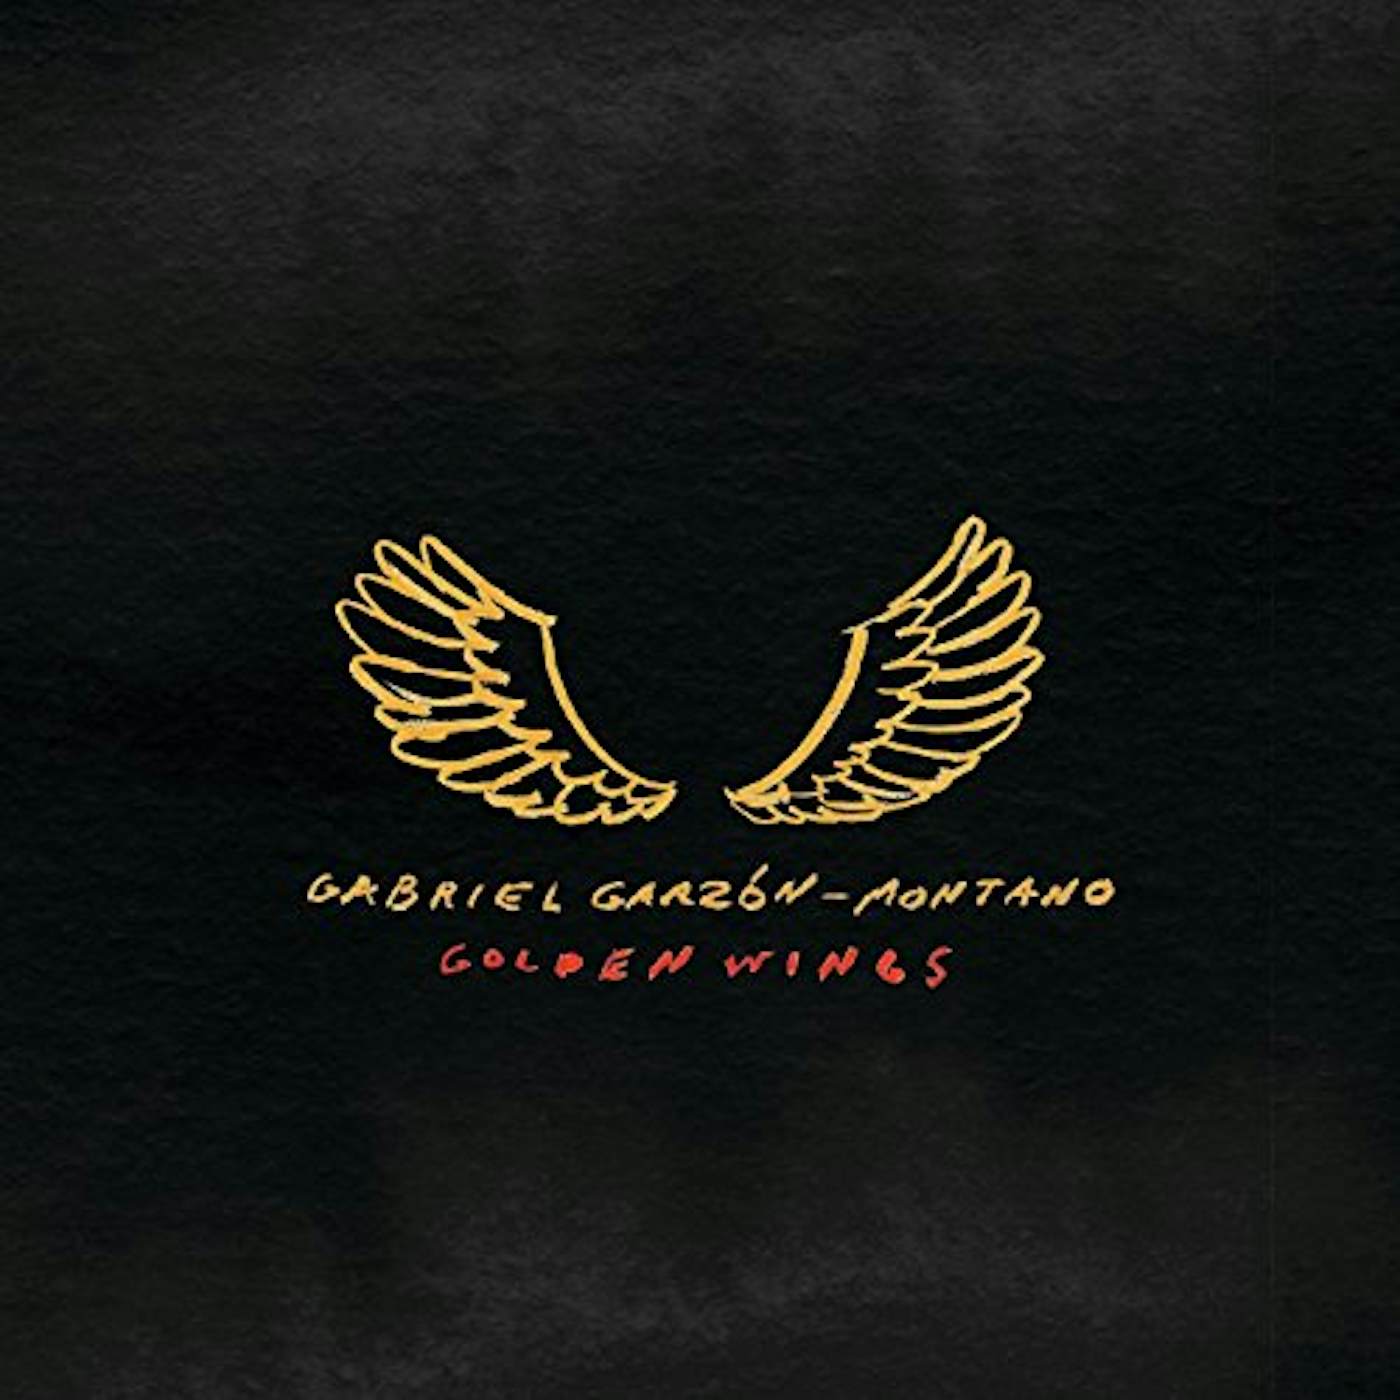 Gabriel Garzón-Montano Golden Wings Vinyl Record